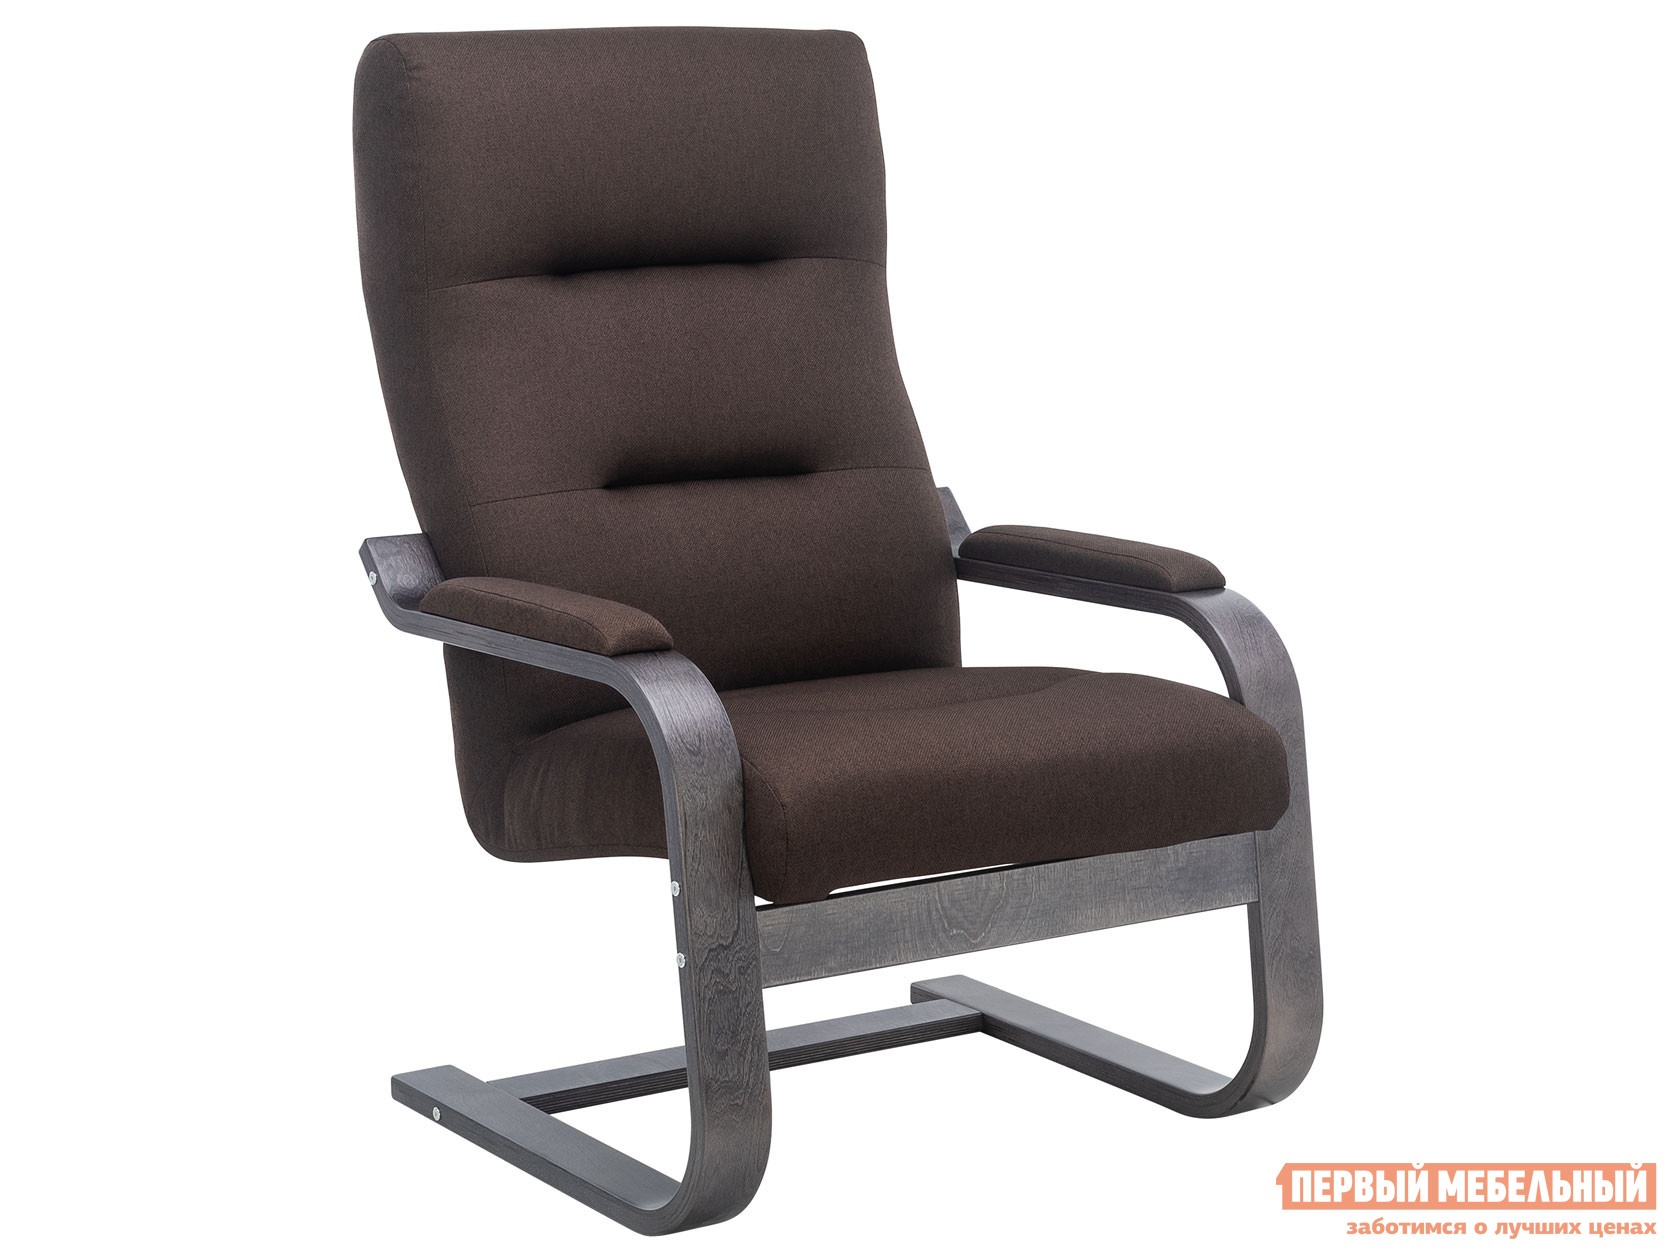 Кресло-качалка кресло освальд люкс венге коричневый, жаккард preview 1